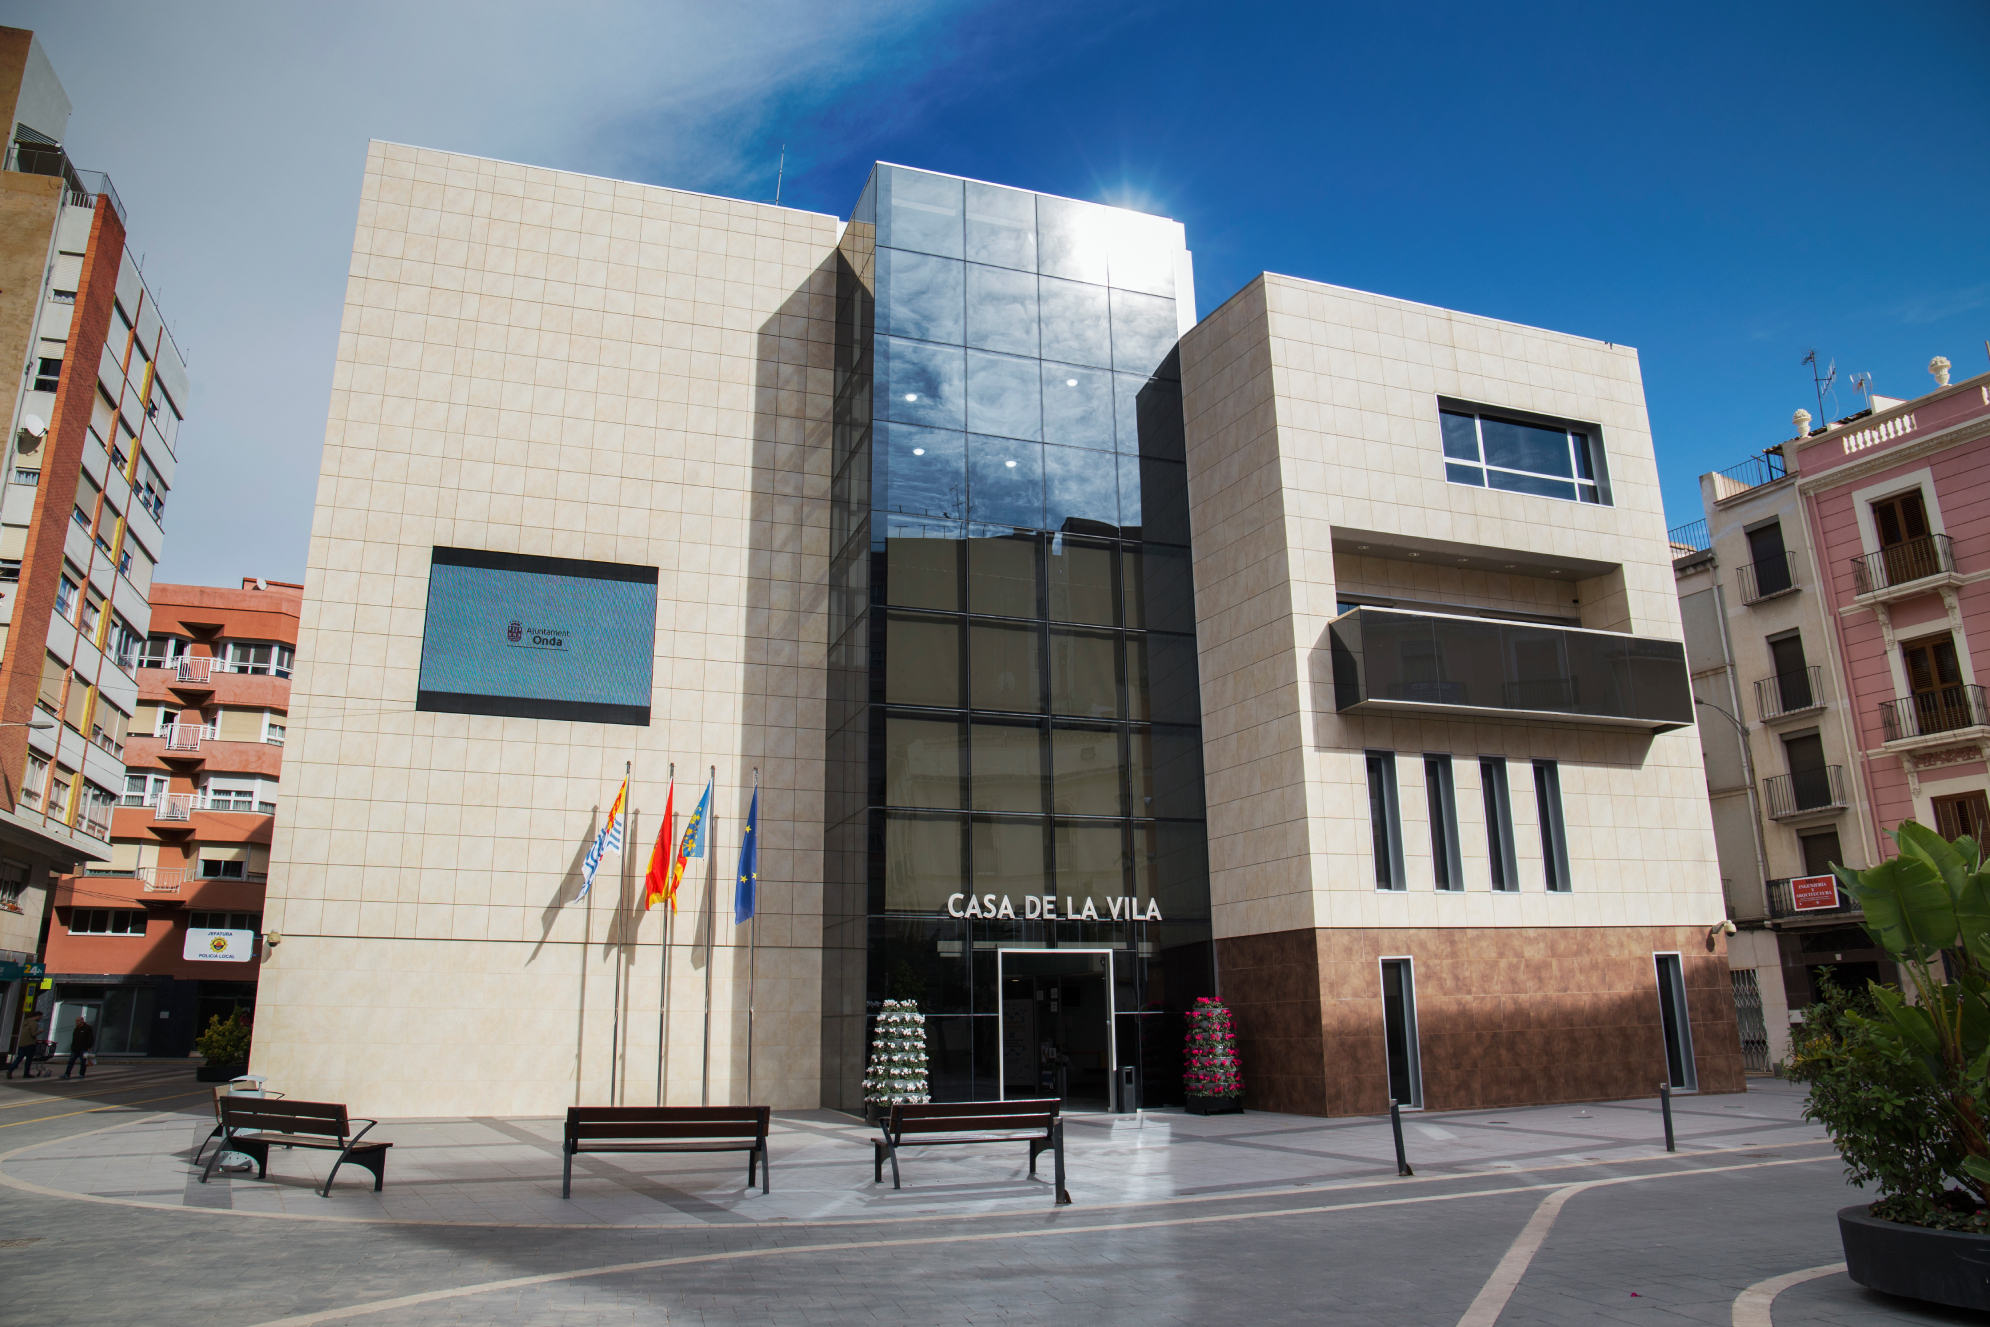 Onda revalida el primer puesto como el municipio con mayor transparencia de la Comunitat Valenciana